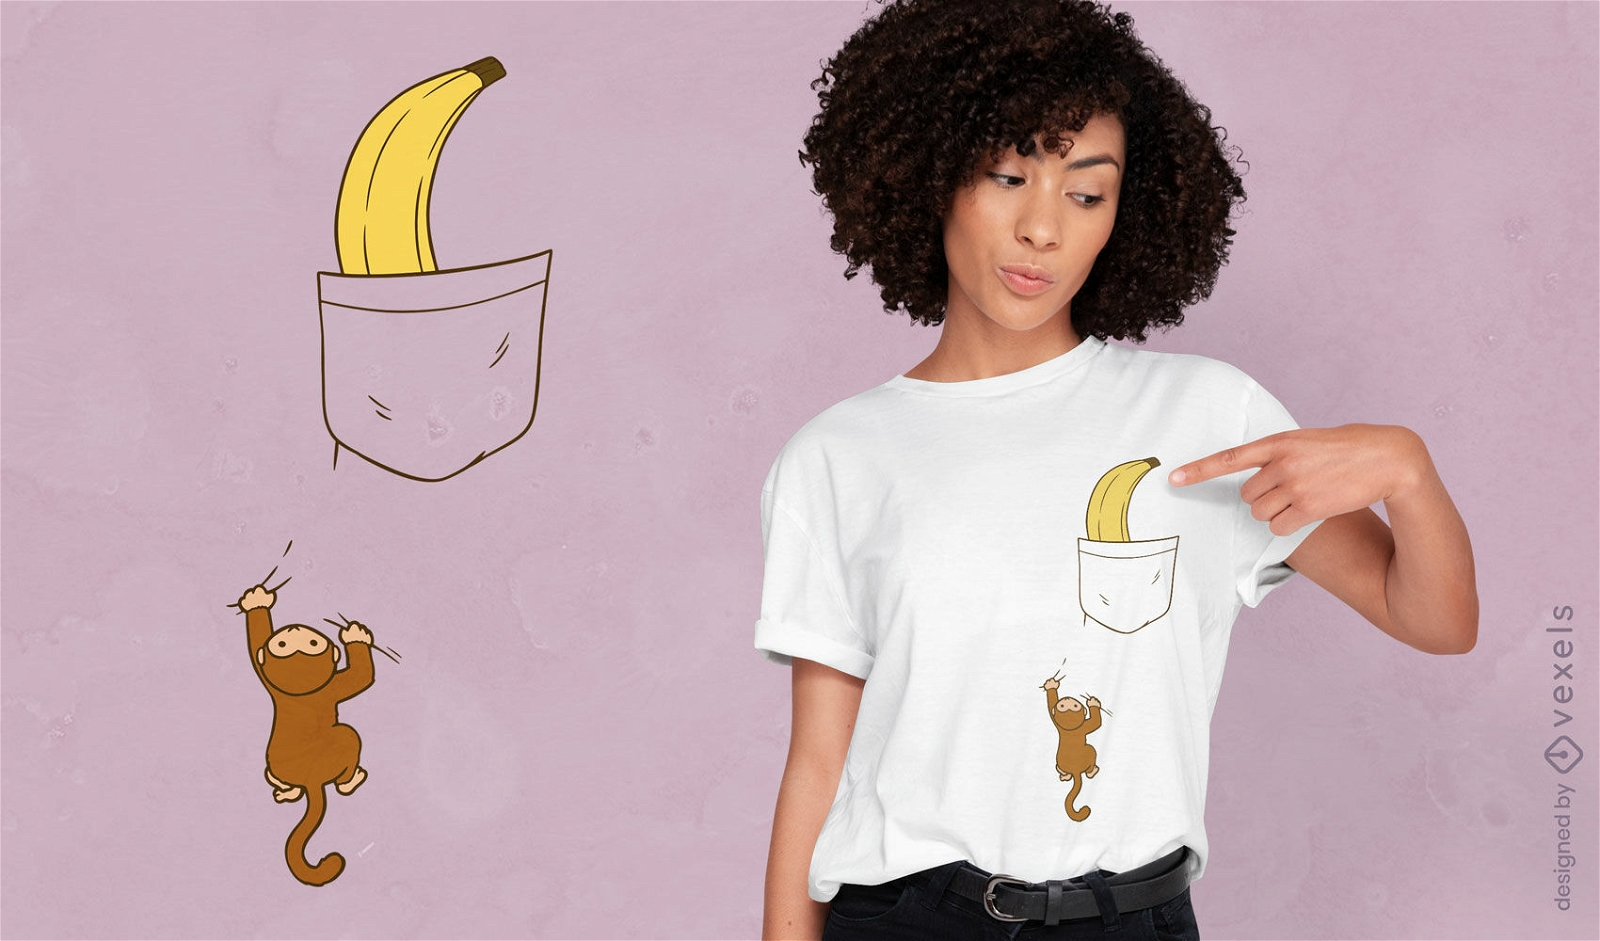 Affenklettern für Bananen-T-Shirt-Design